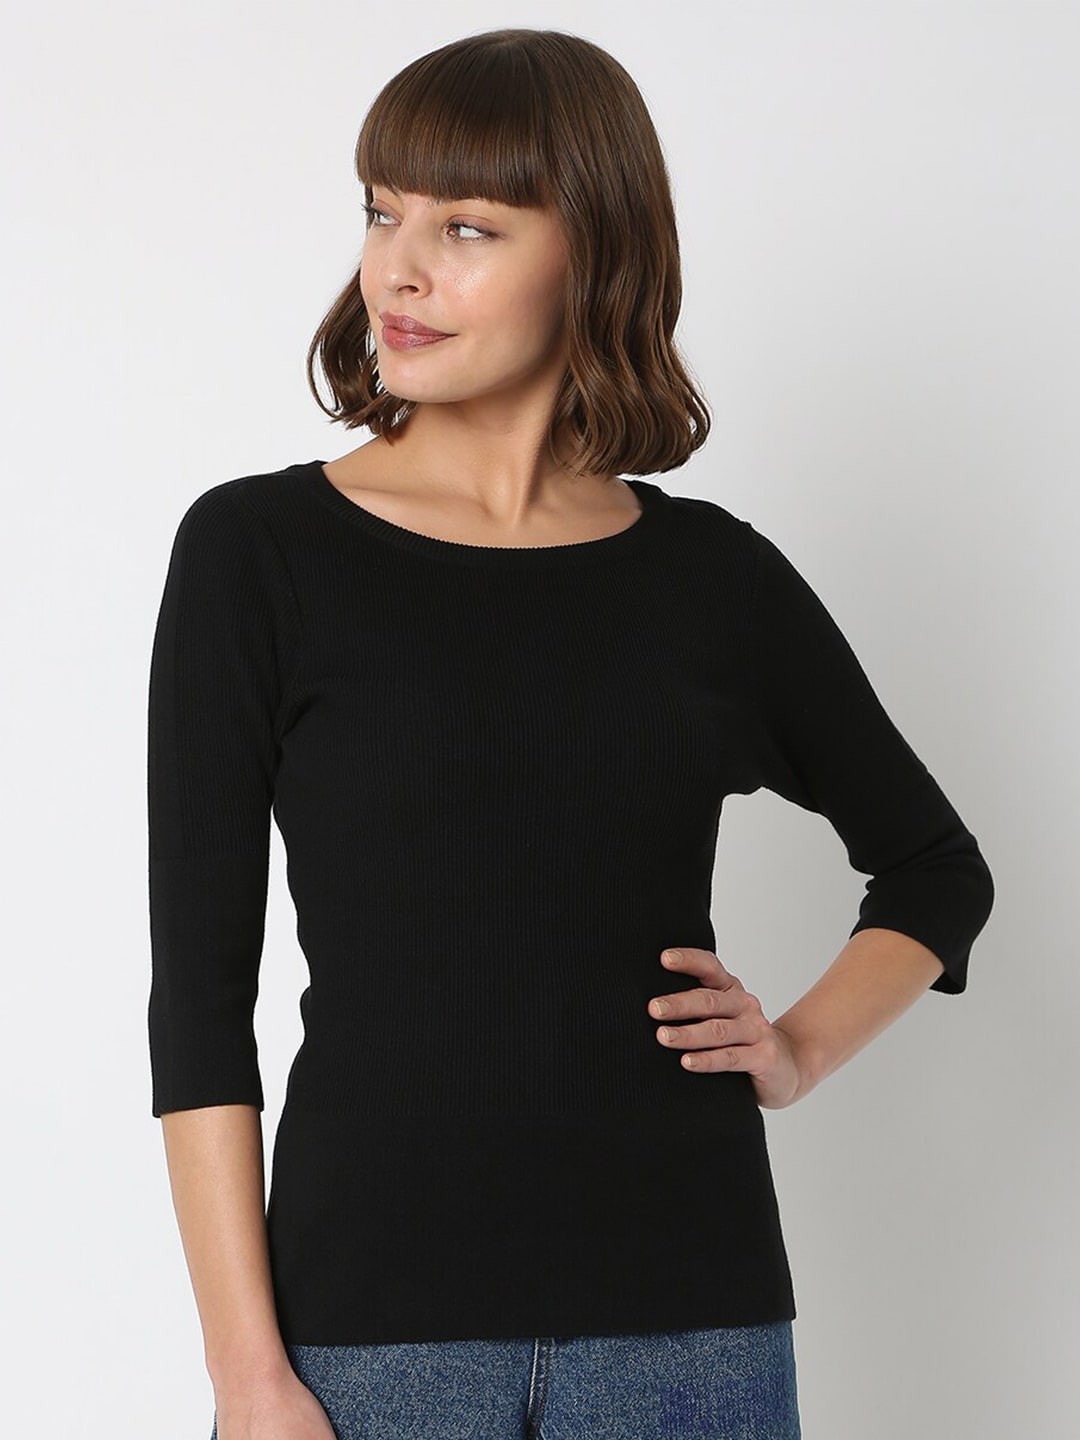 Vero Moda Women Black Solid Pullover Sweater Price in India